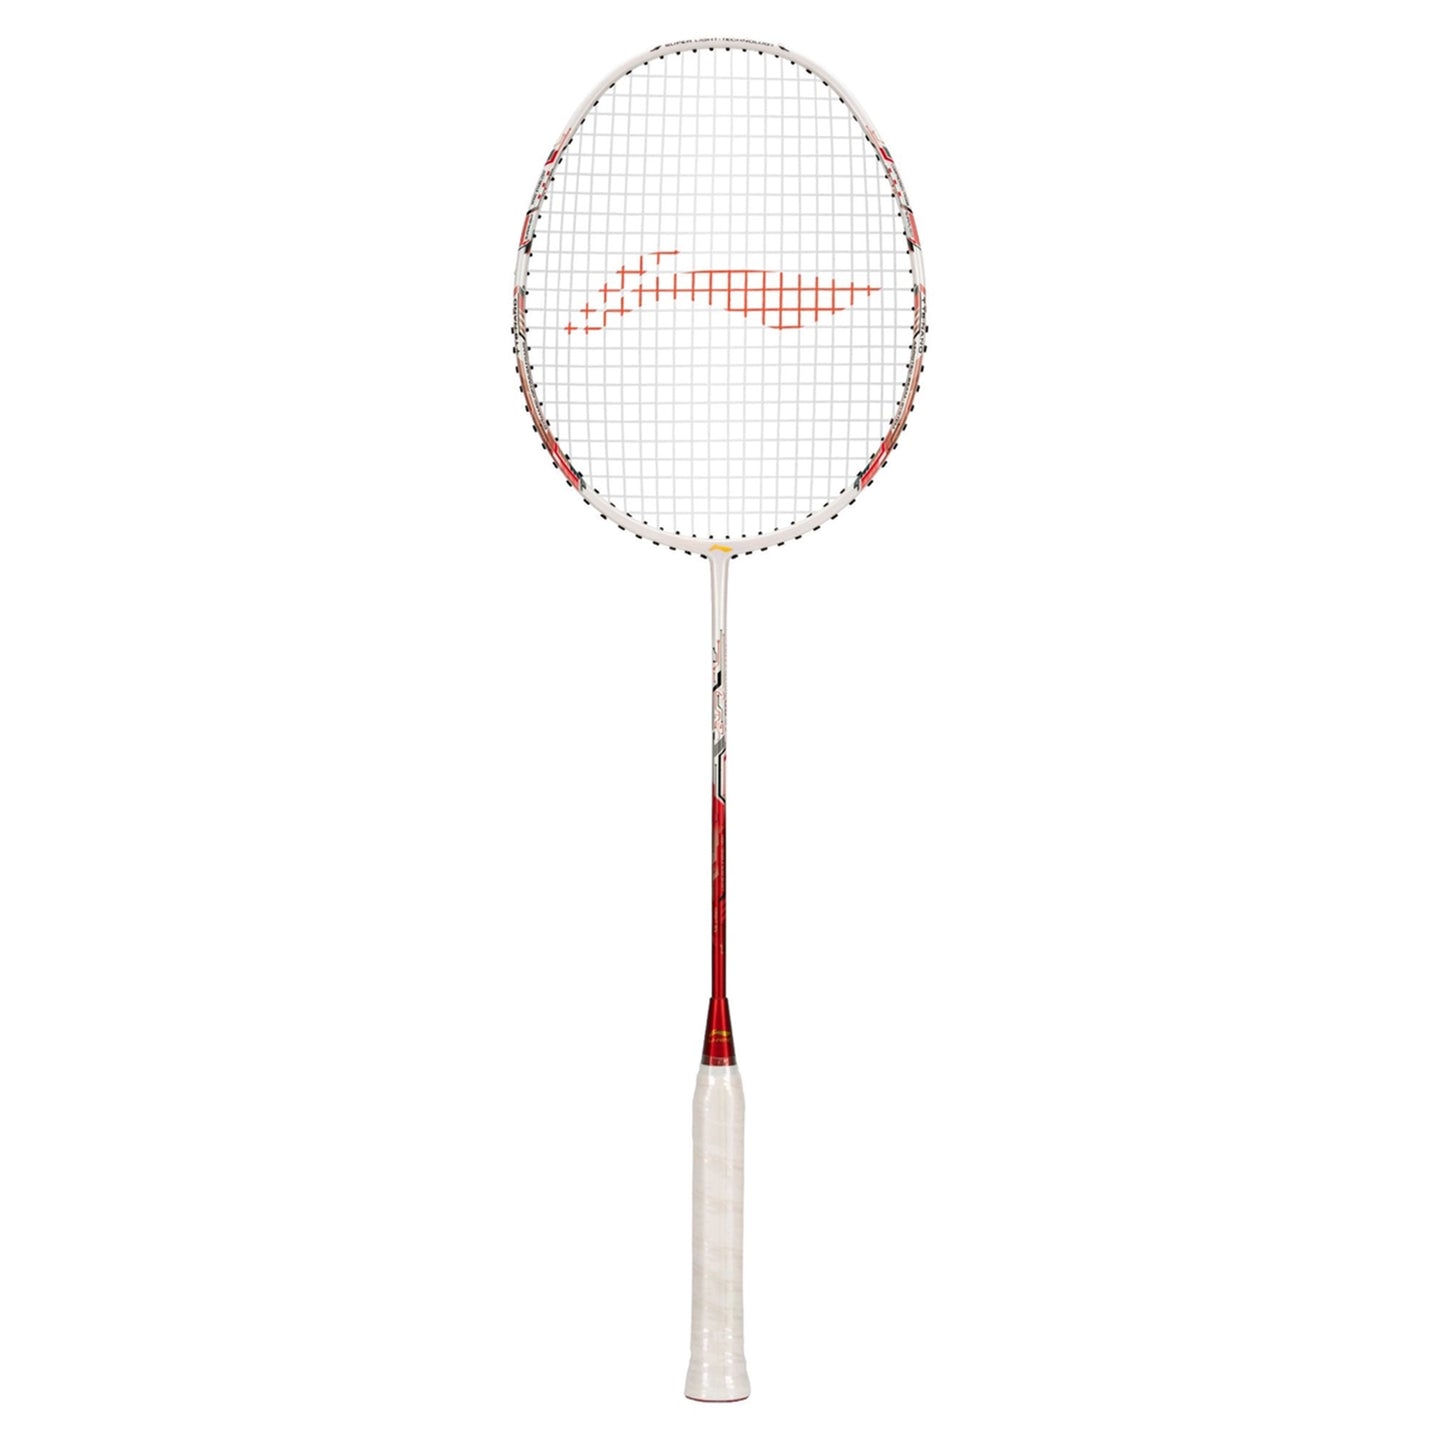 Li-Ning Air-Force 80 G3 Unstrung Badminton Racquet - Best Price online Prokicksports.com